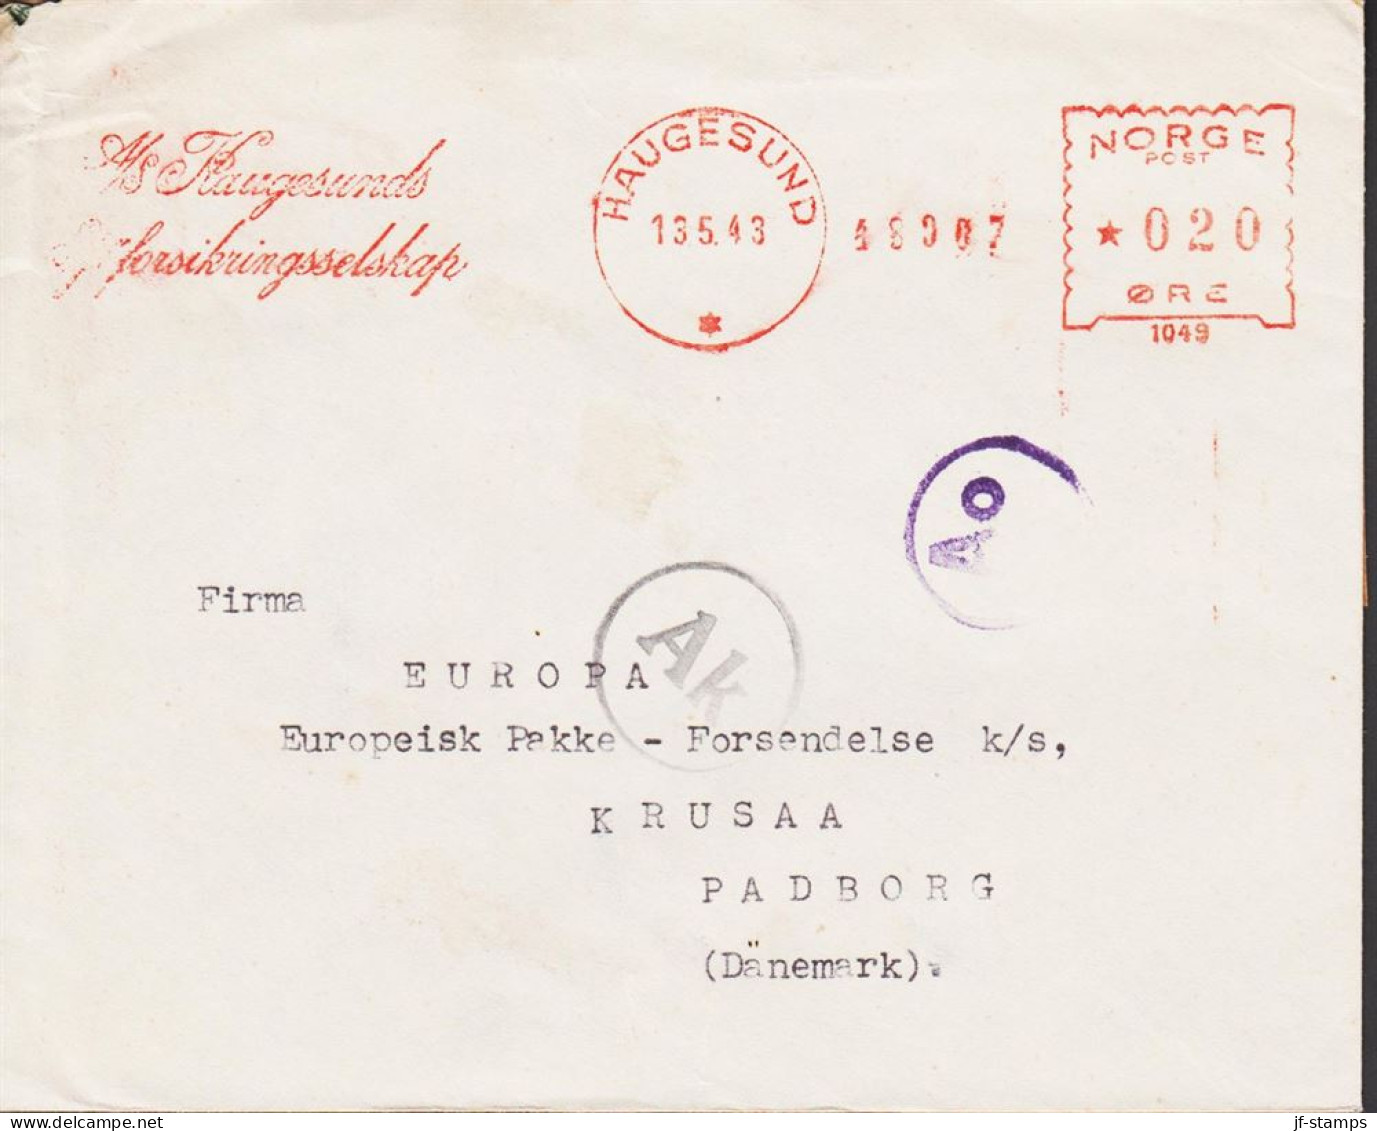 1943. NORGE. Very Interesting Cover To Firma EUROPA Europæisk Pakke Forsendelse, KRUSAA PADBORG DANMARK Ca... - JF545670 - Storia Postale